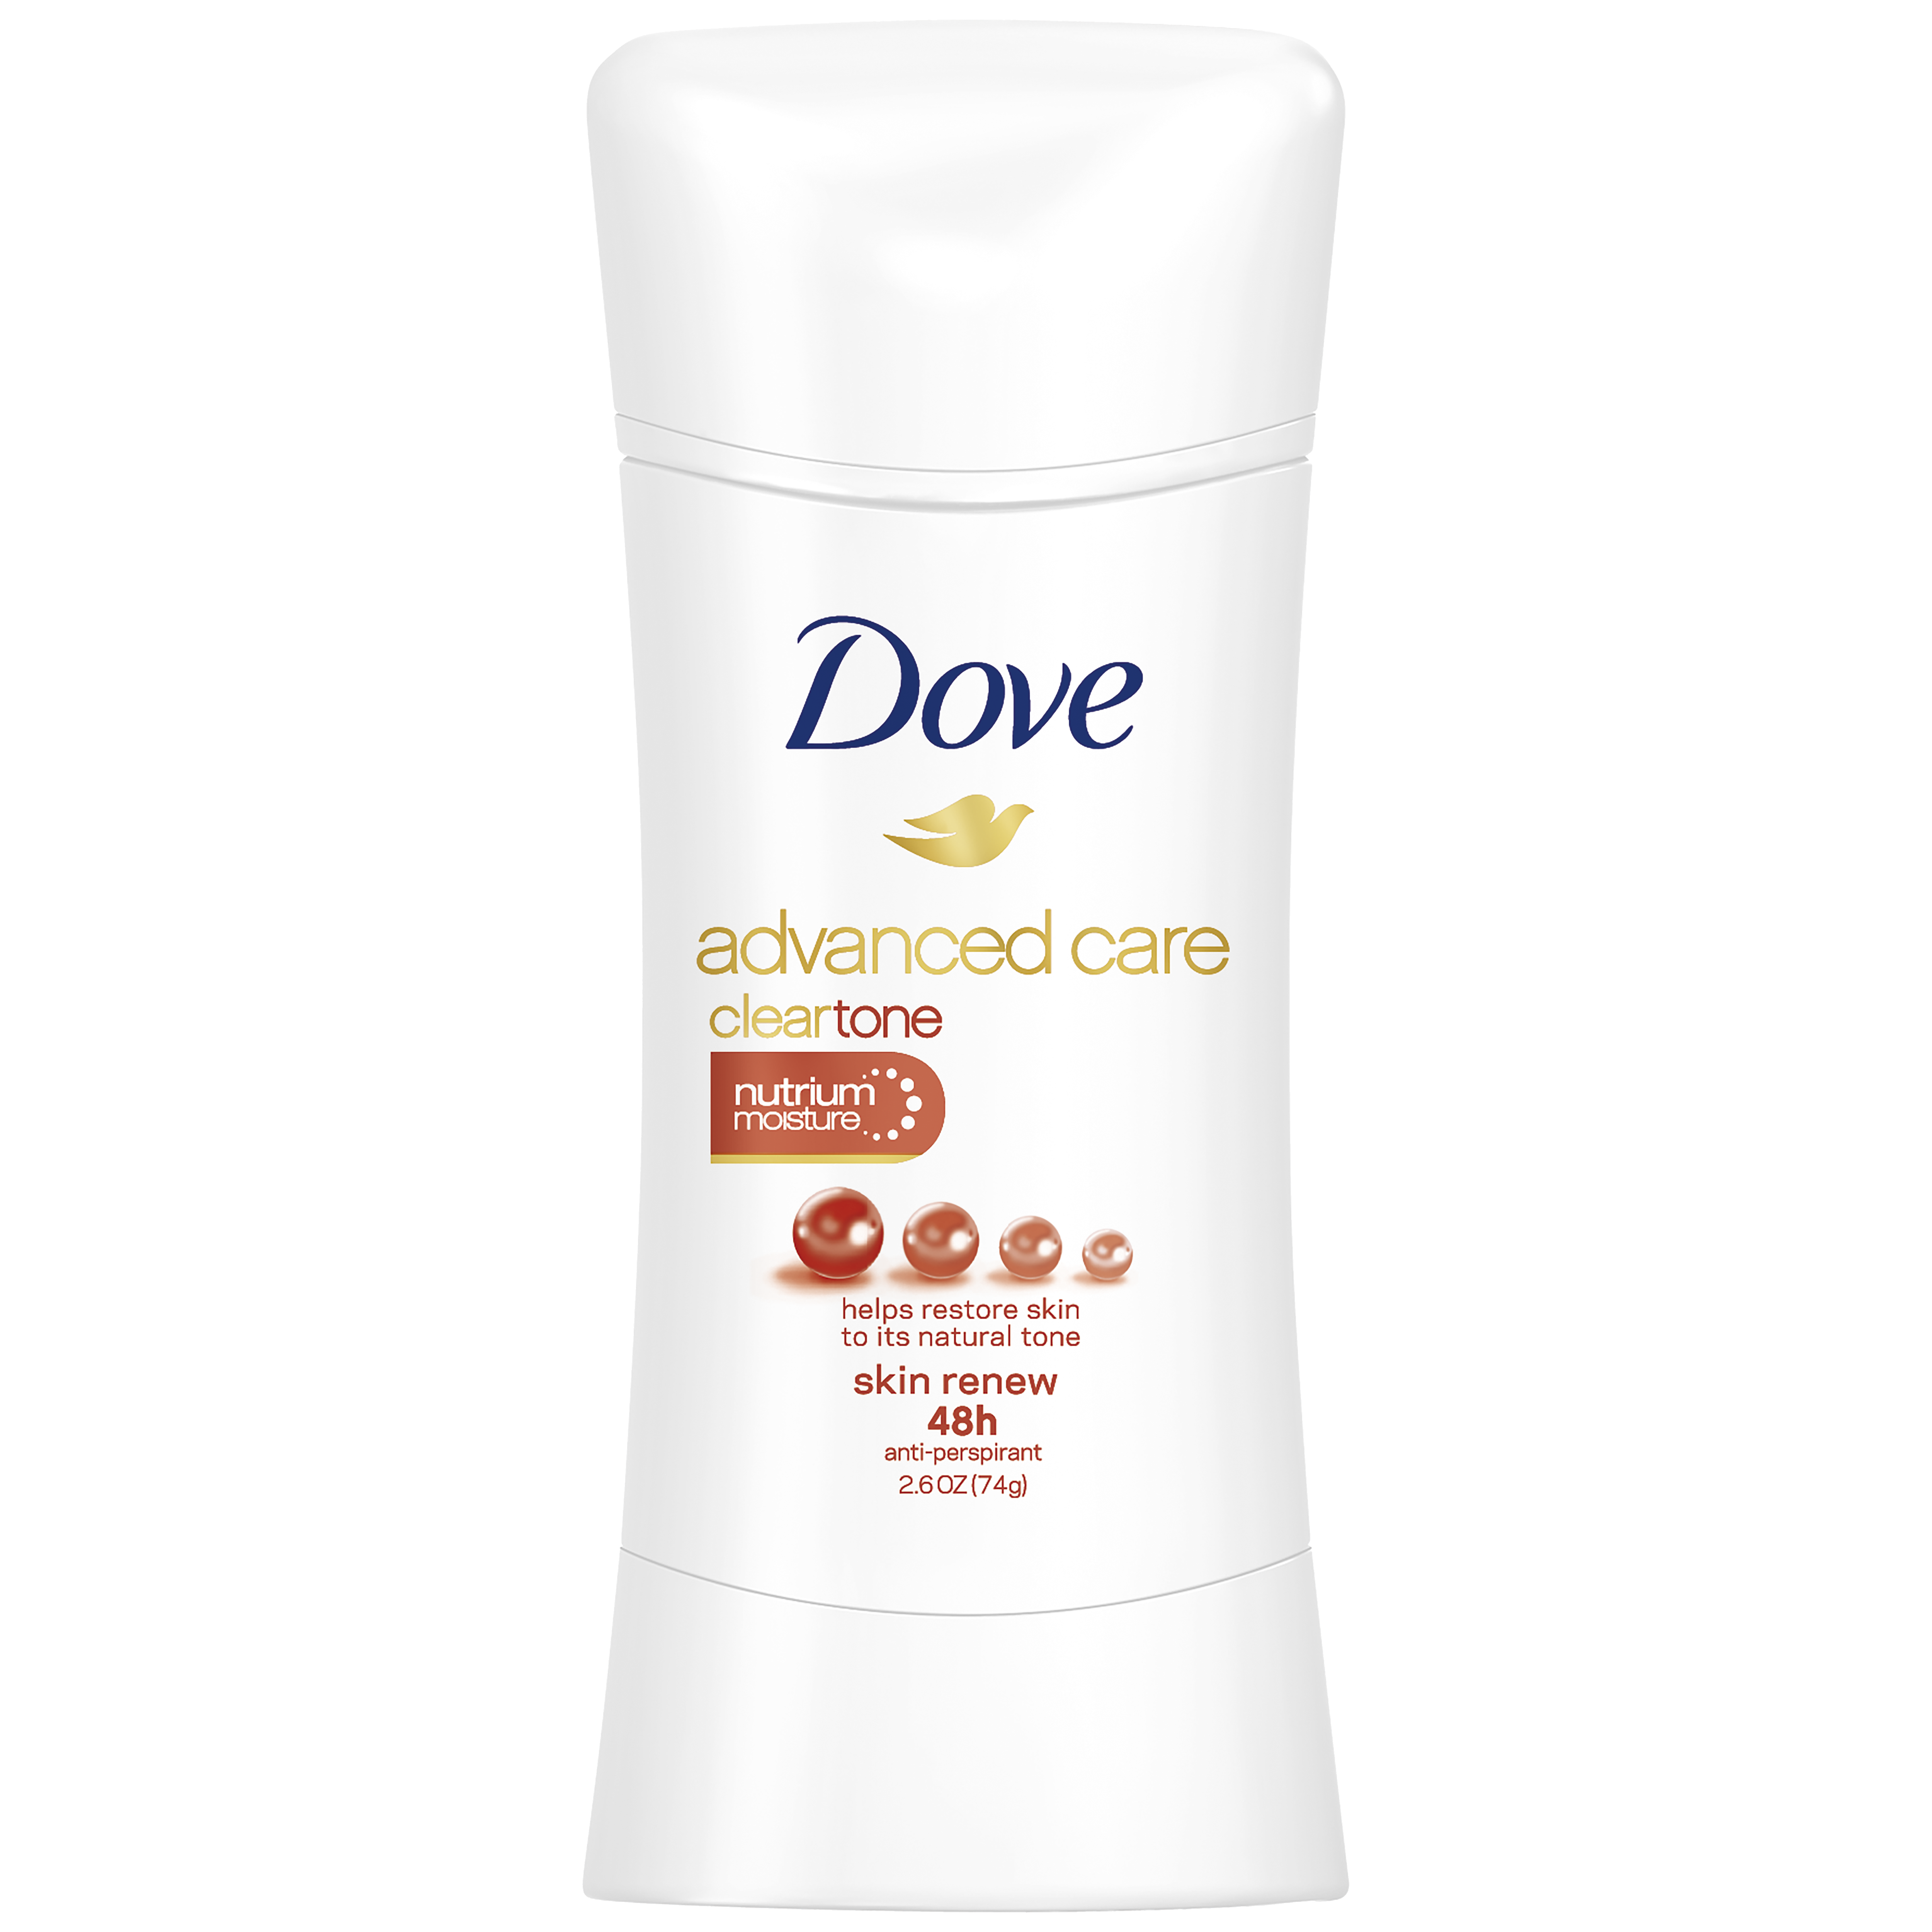 Deodorant clipart underarm. Dove advanced care clear